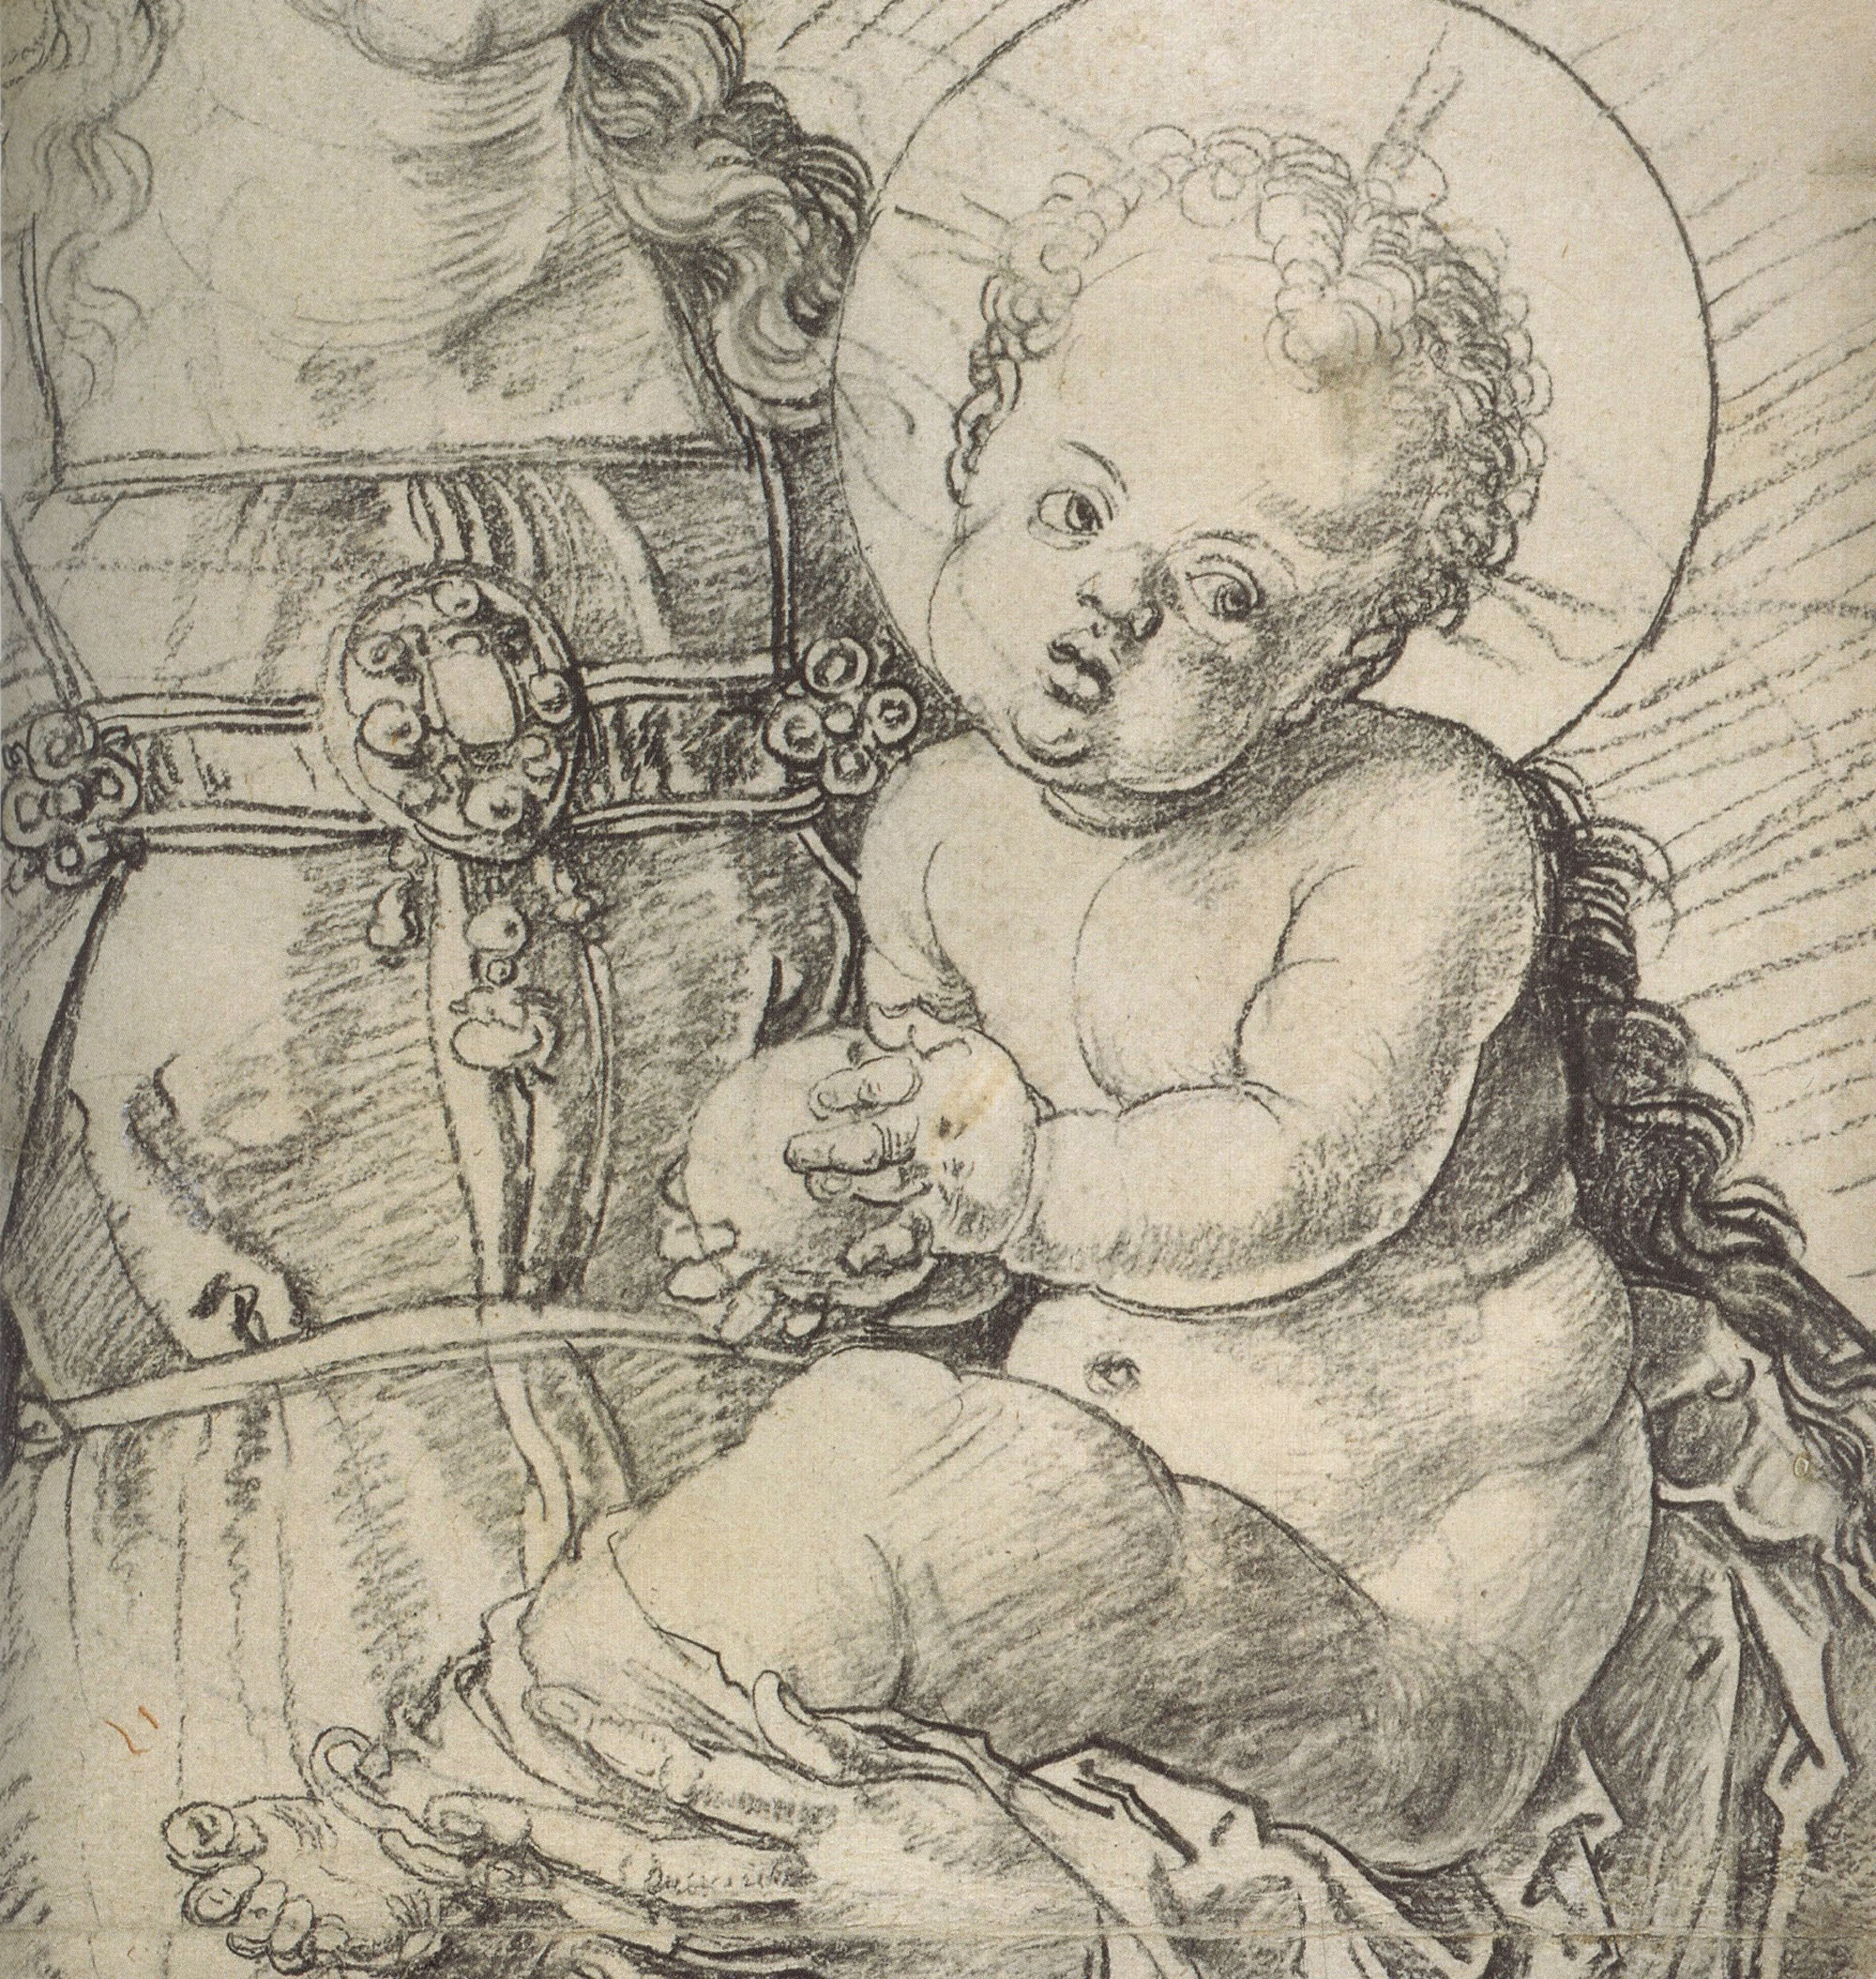 Альбрехт Дюрер. "Мадонна с Младенцем". 1514 год.